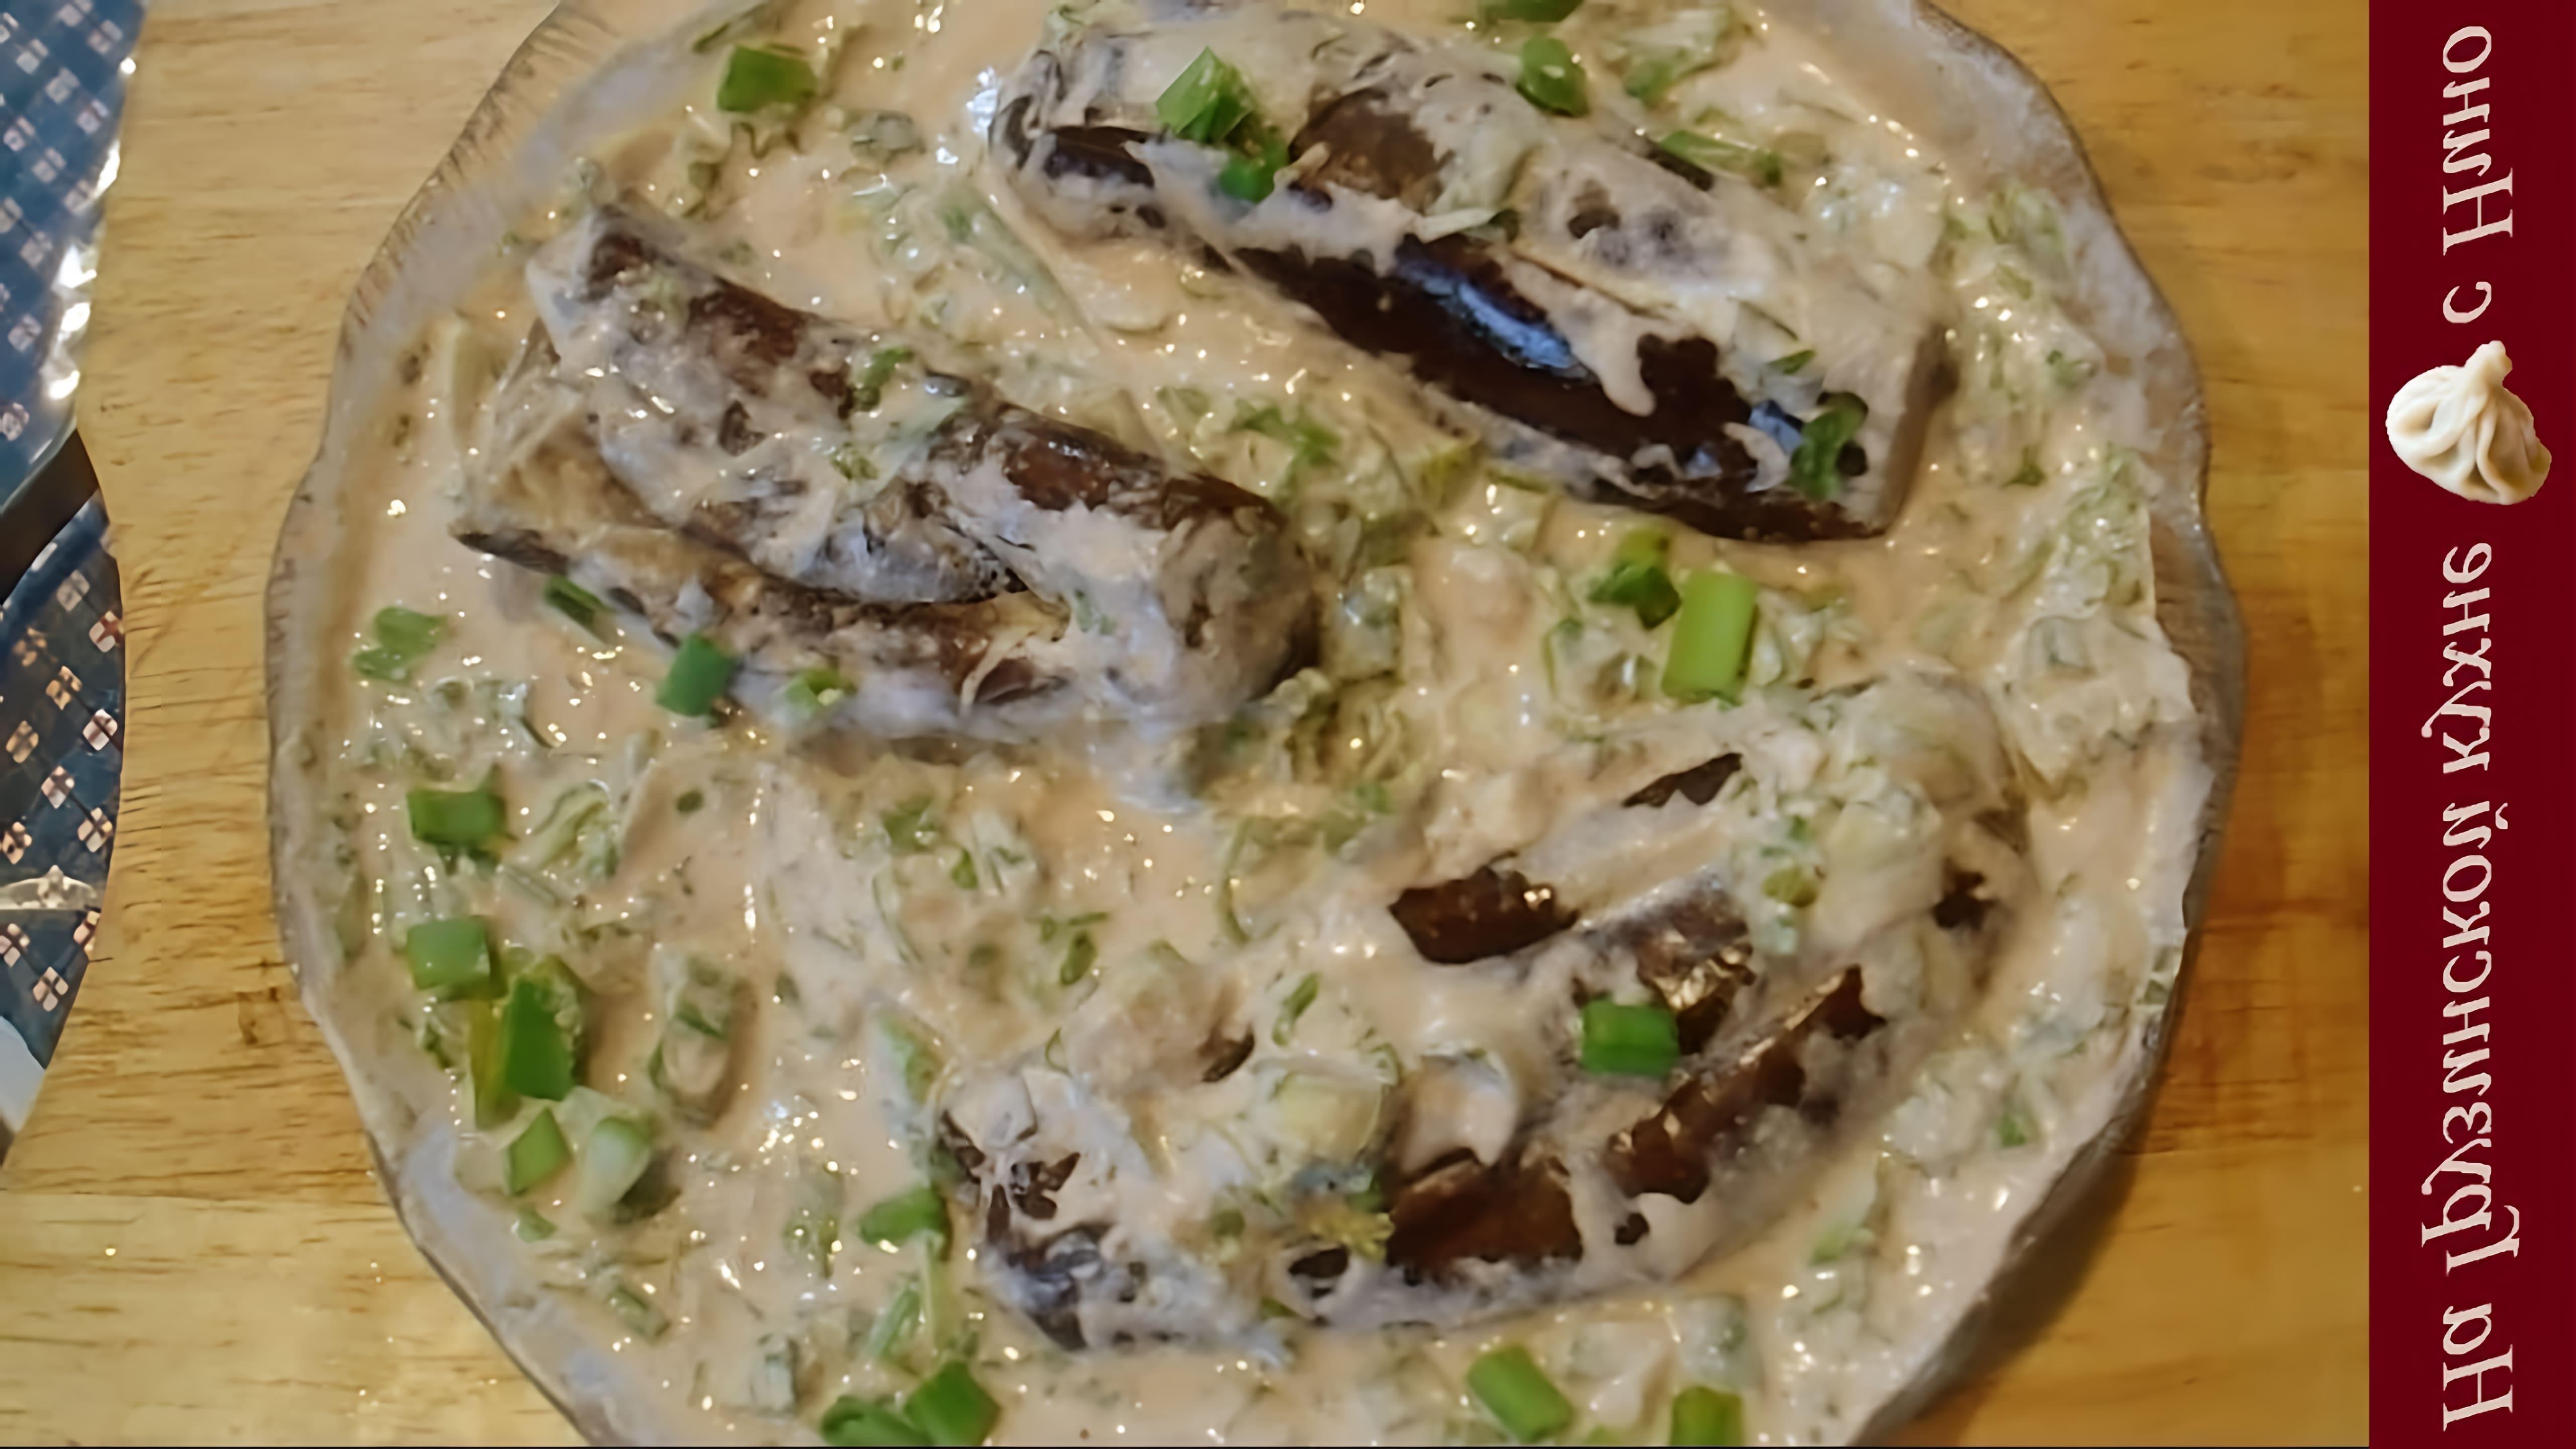 В этом видео демонстрируется рецепт приготовления веганского блюда - баклажанов в ореховом соусе баже